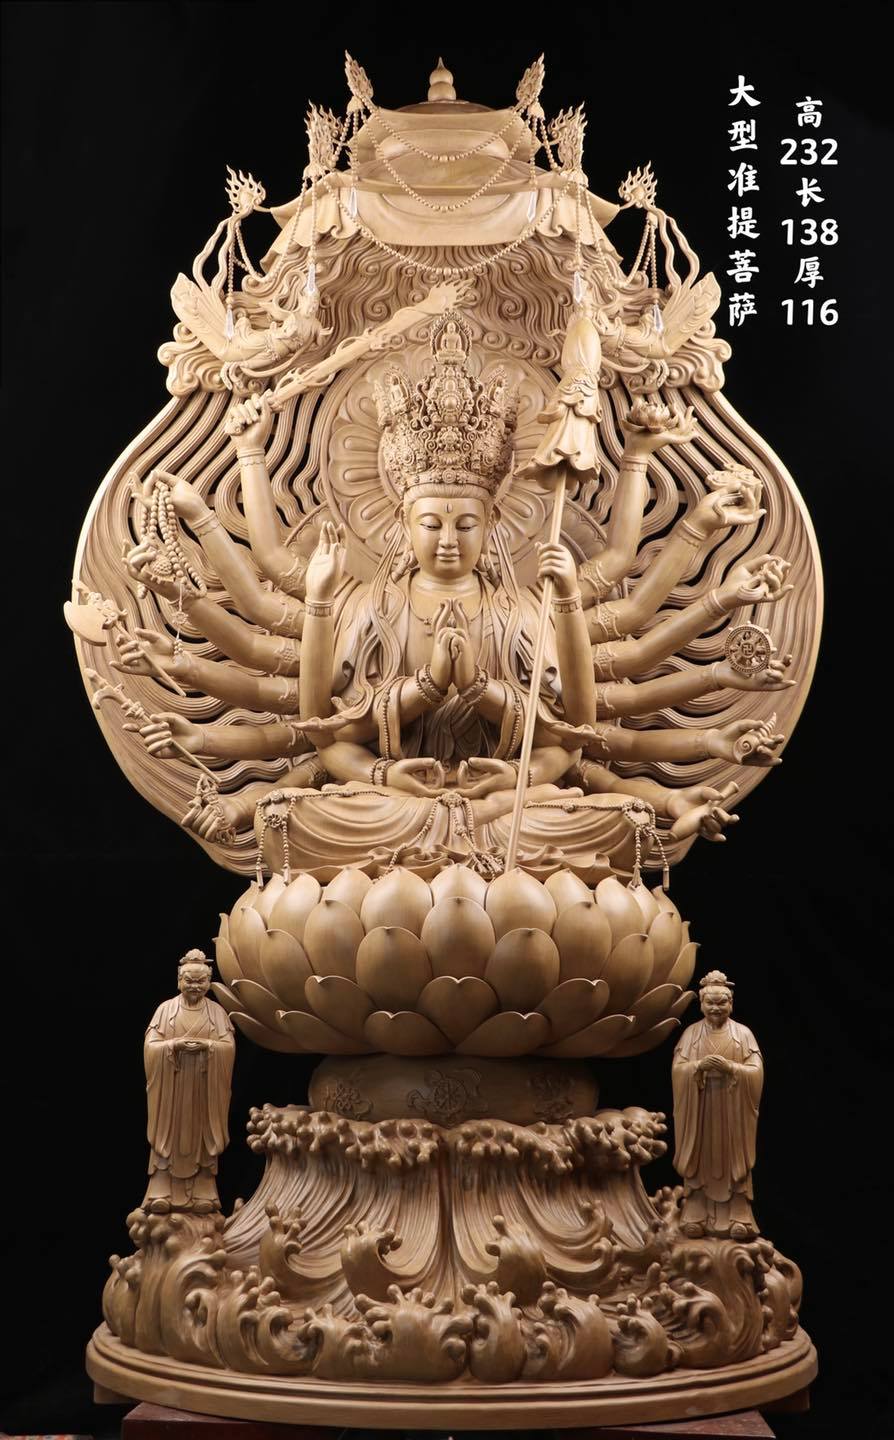 Điêu khắc gỗ hình tượng Phật tâm linh